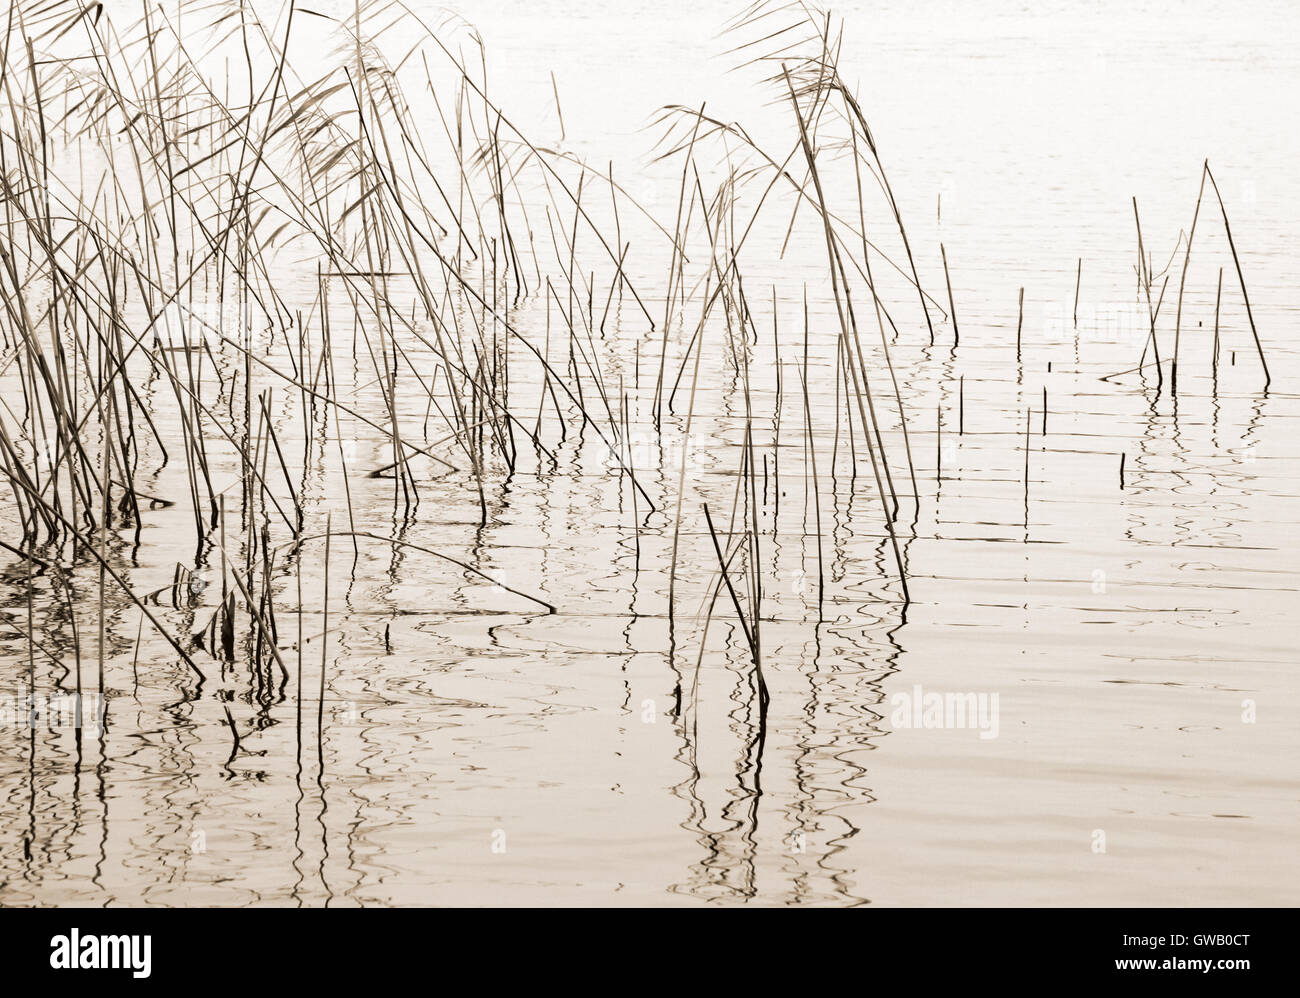 Stagionale astratto la natura in autunno sfondo: Impianto a secco / reed / reeds boccola formante un bel disegno geometrico Foto Stock